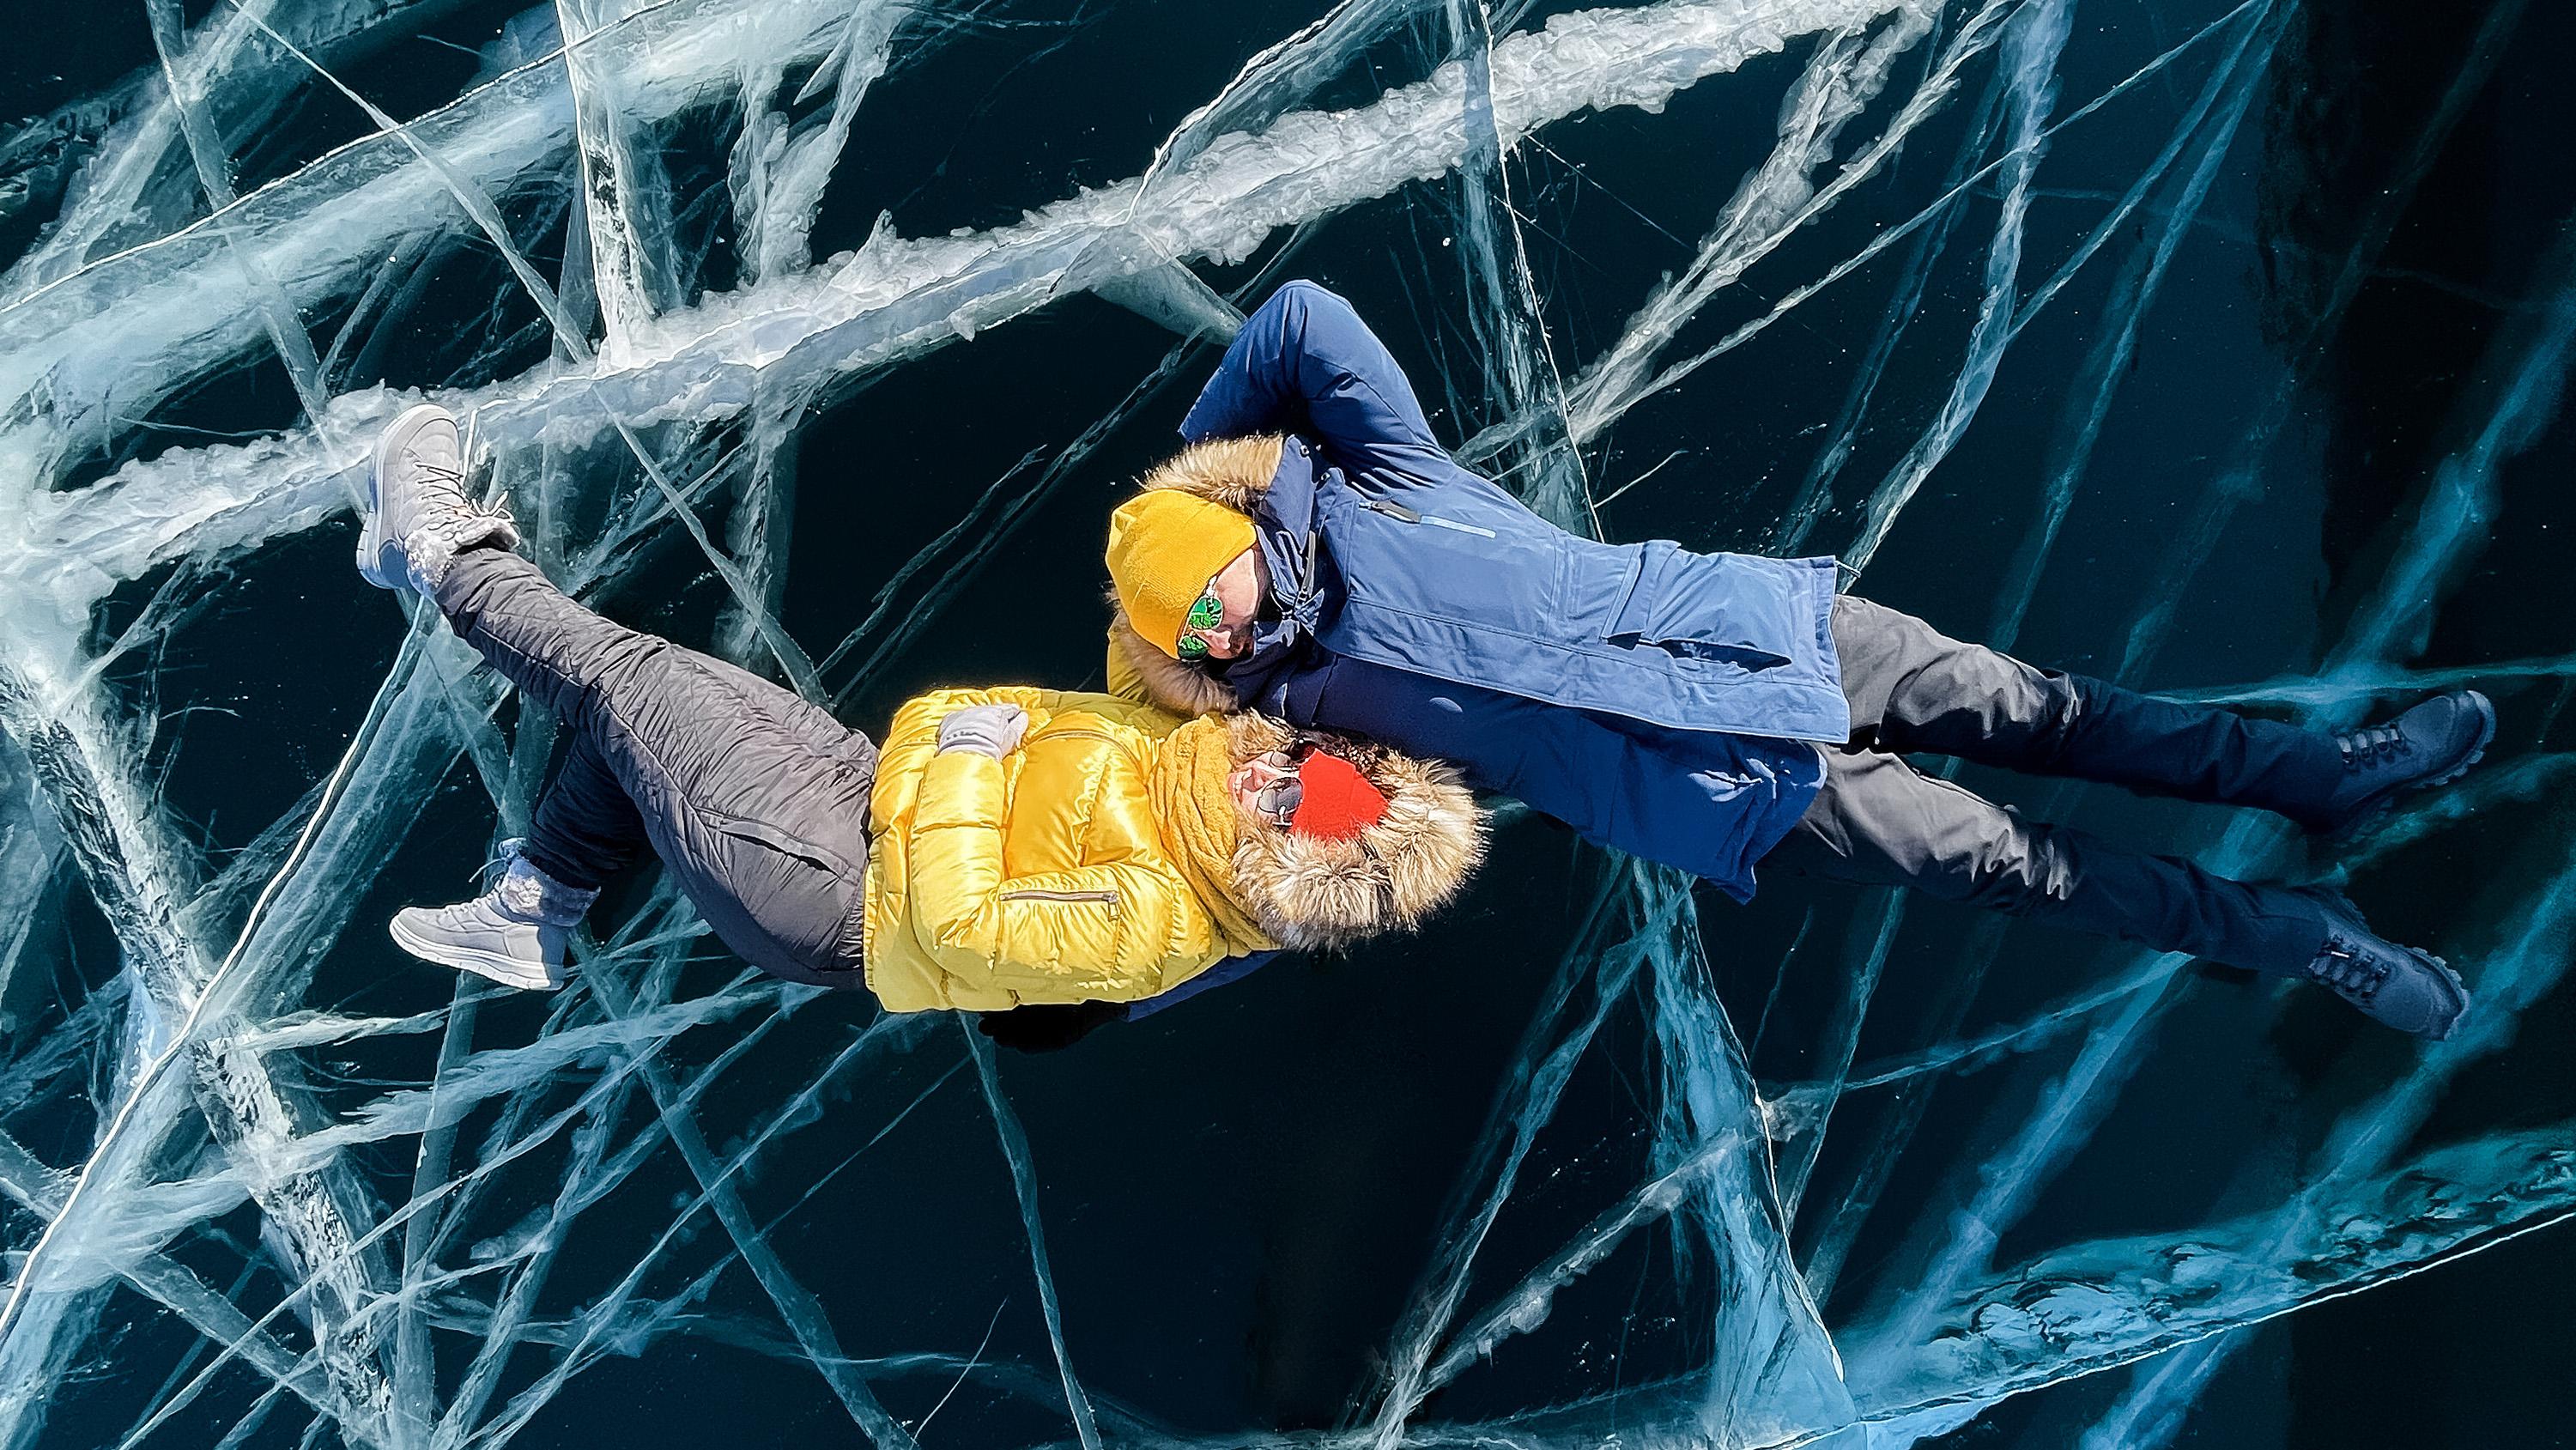 Фототур на Байкал зимой 2021 — хит от турклуба MyWay